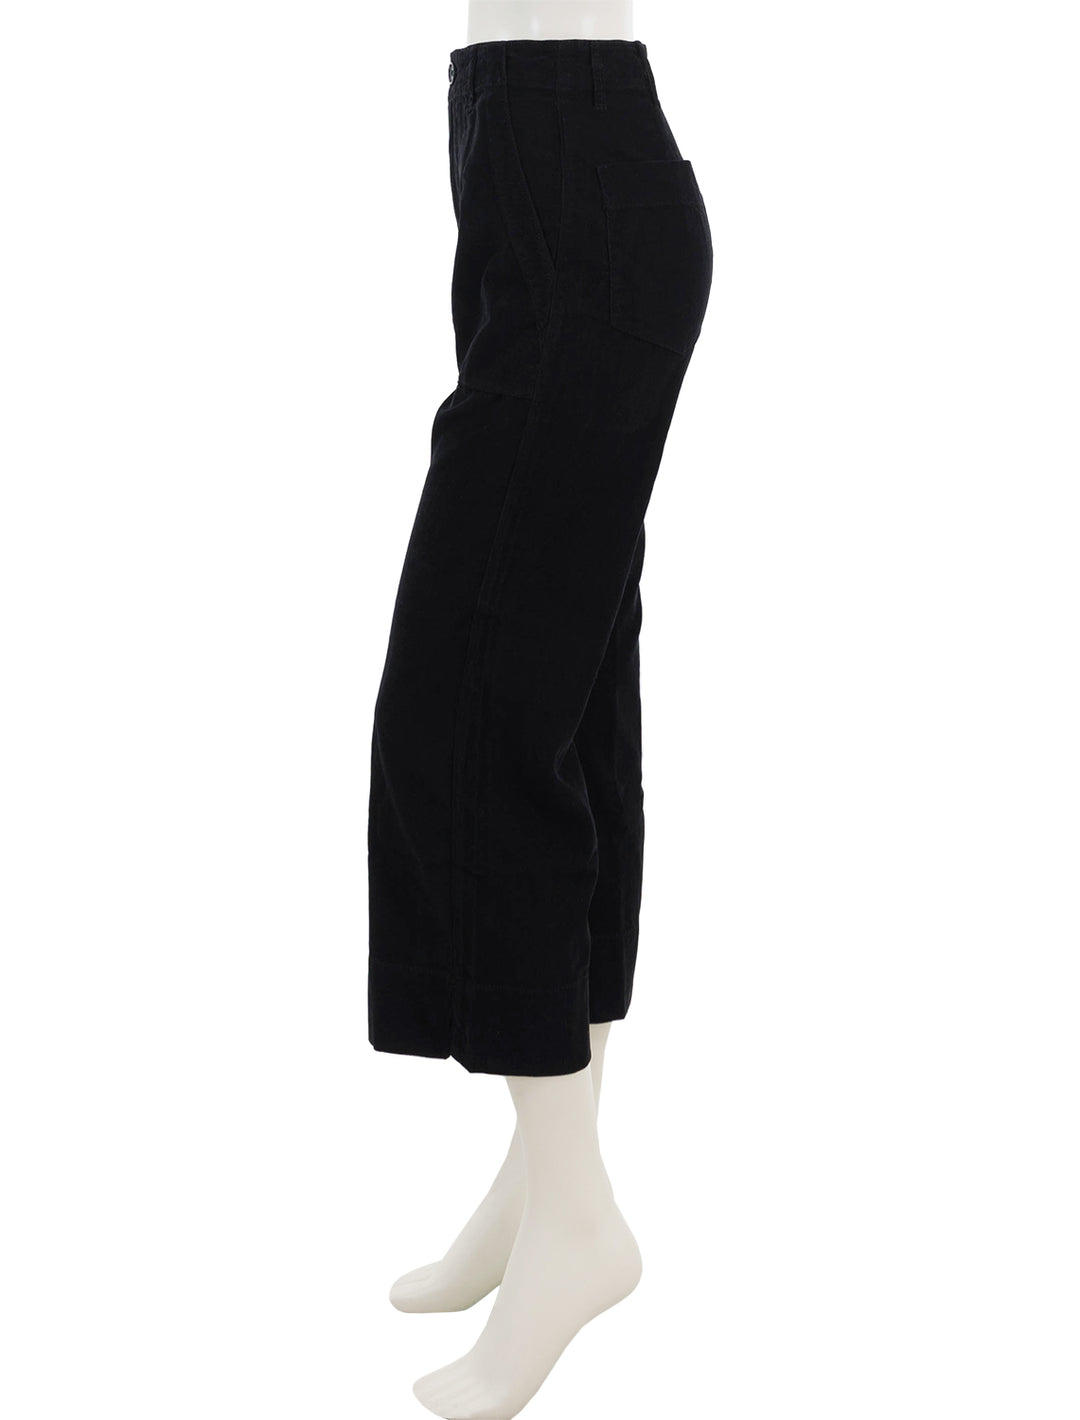 Side view of Velvet's vera pant in black cord.